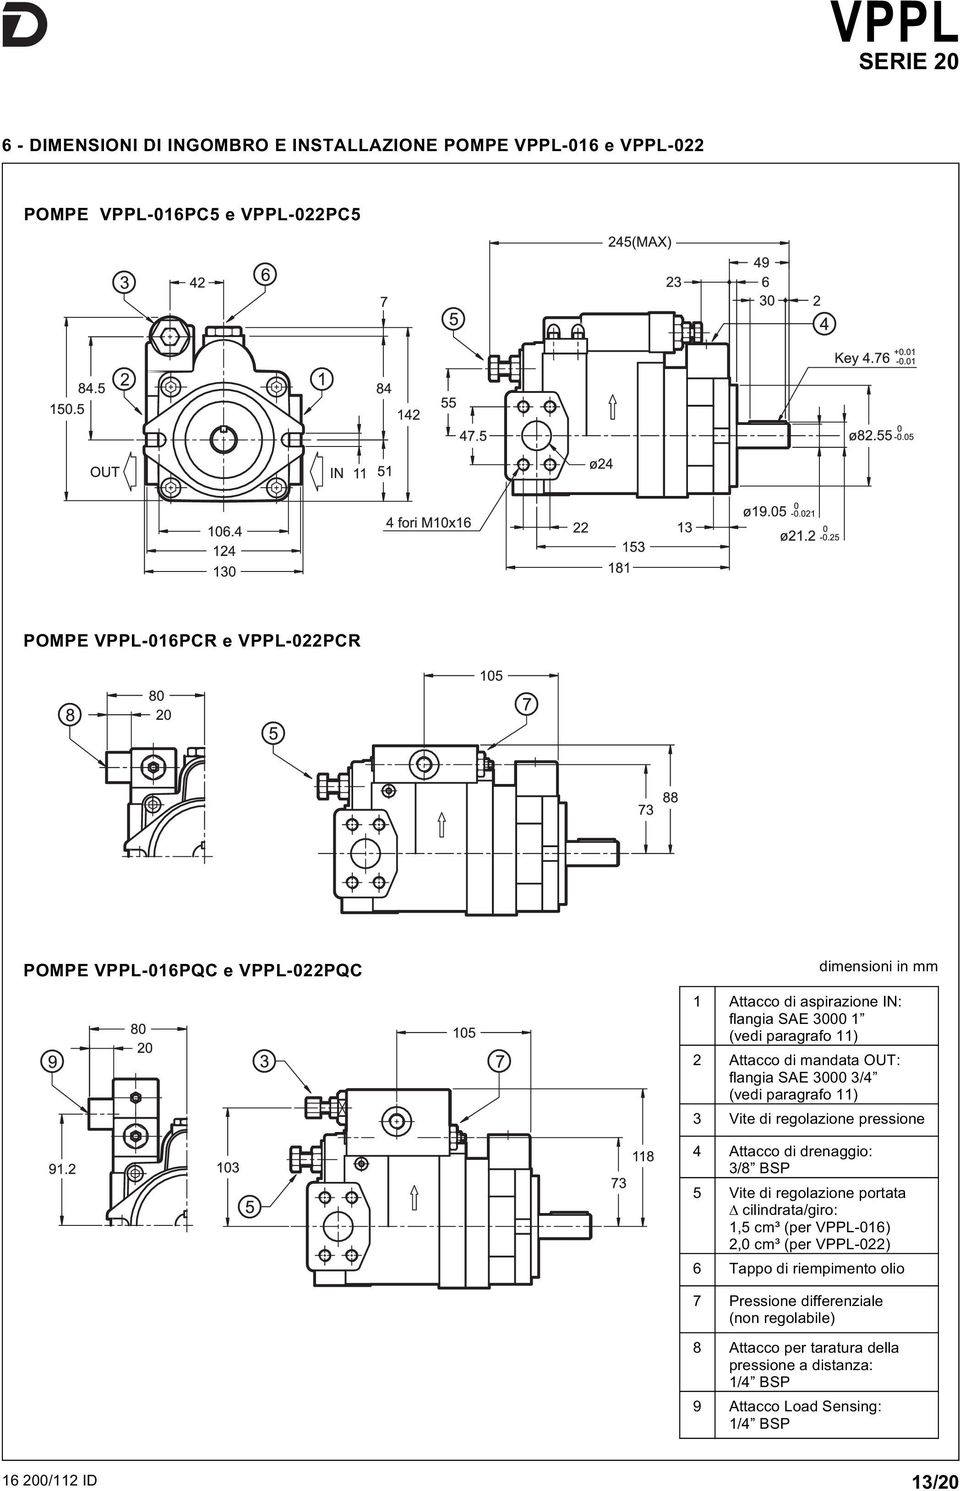 regolazione pressione Attacco di drenaggio: 3/8 BSP 5 Vite di regolazione portata cilindrata/giro:,5 cm³ (per VPPL-6), cm³ (per VPPL-) 6 Tappo di